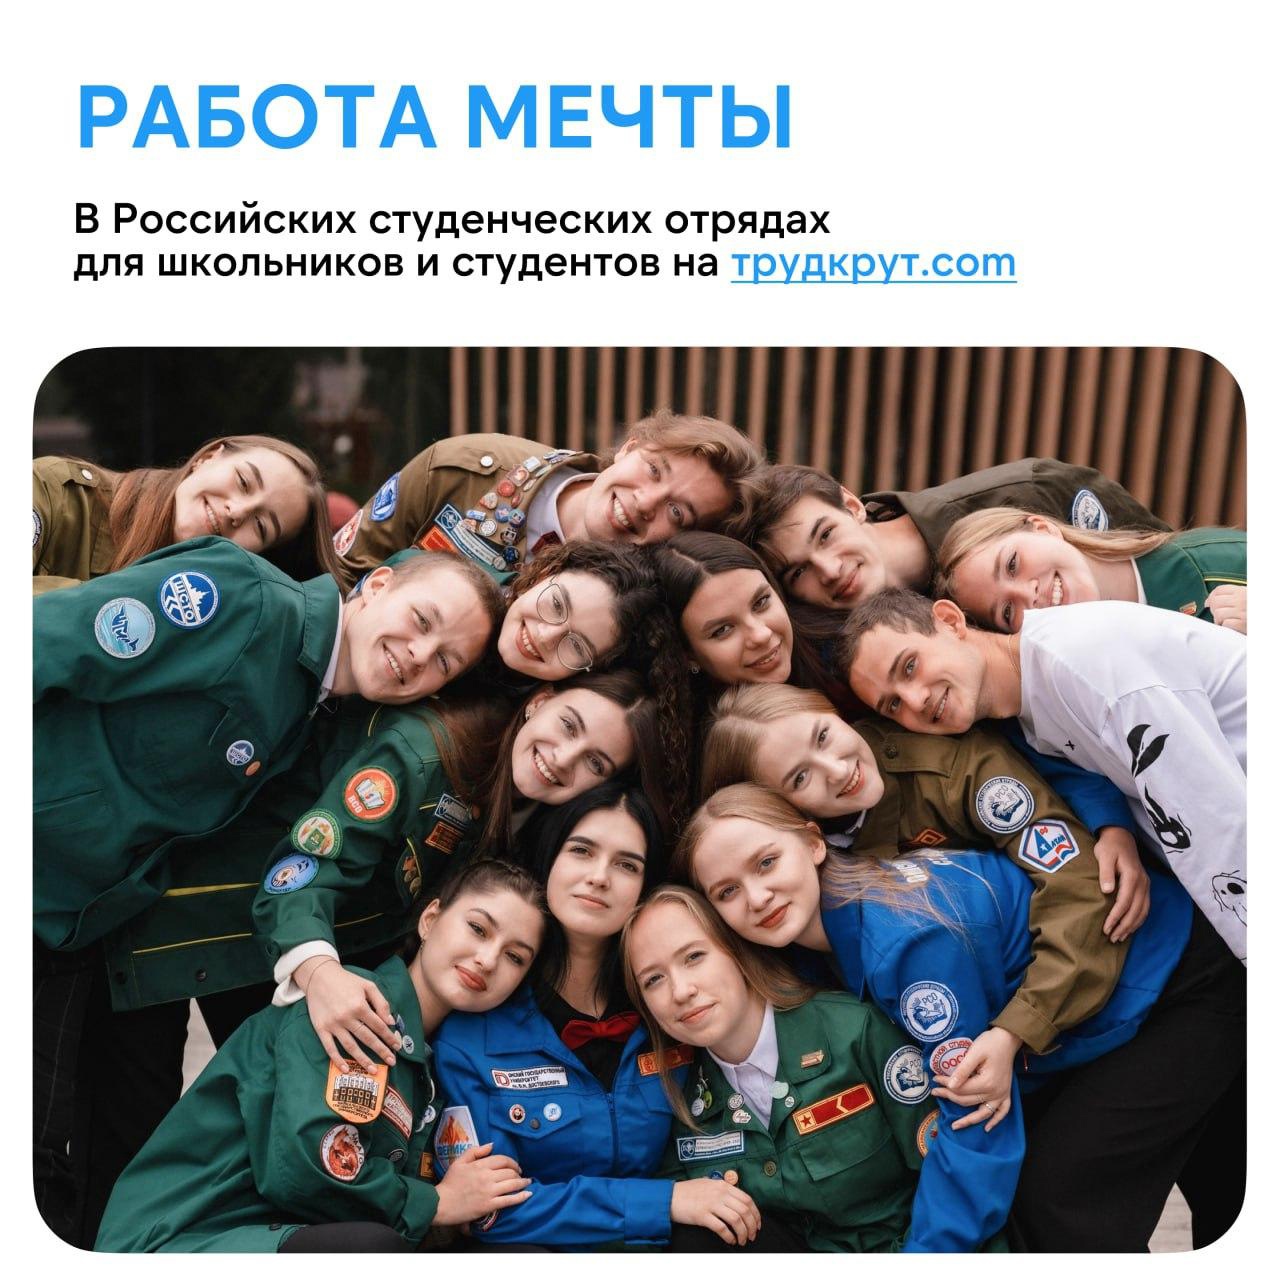 Российские студенческие отряды предлагают работу для школьников и студентов по всей России.